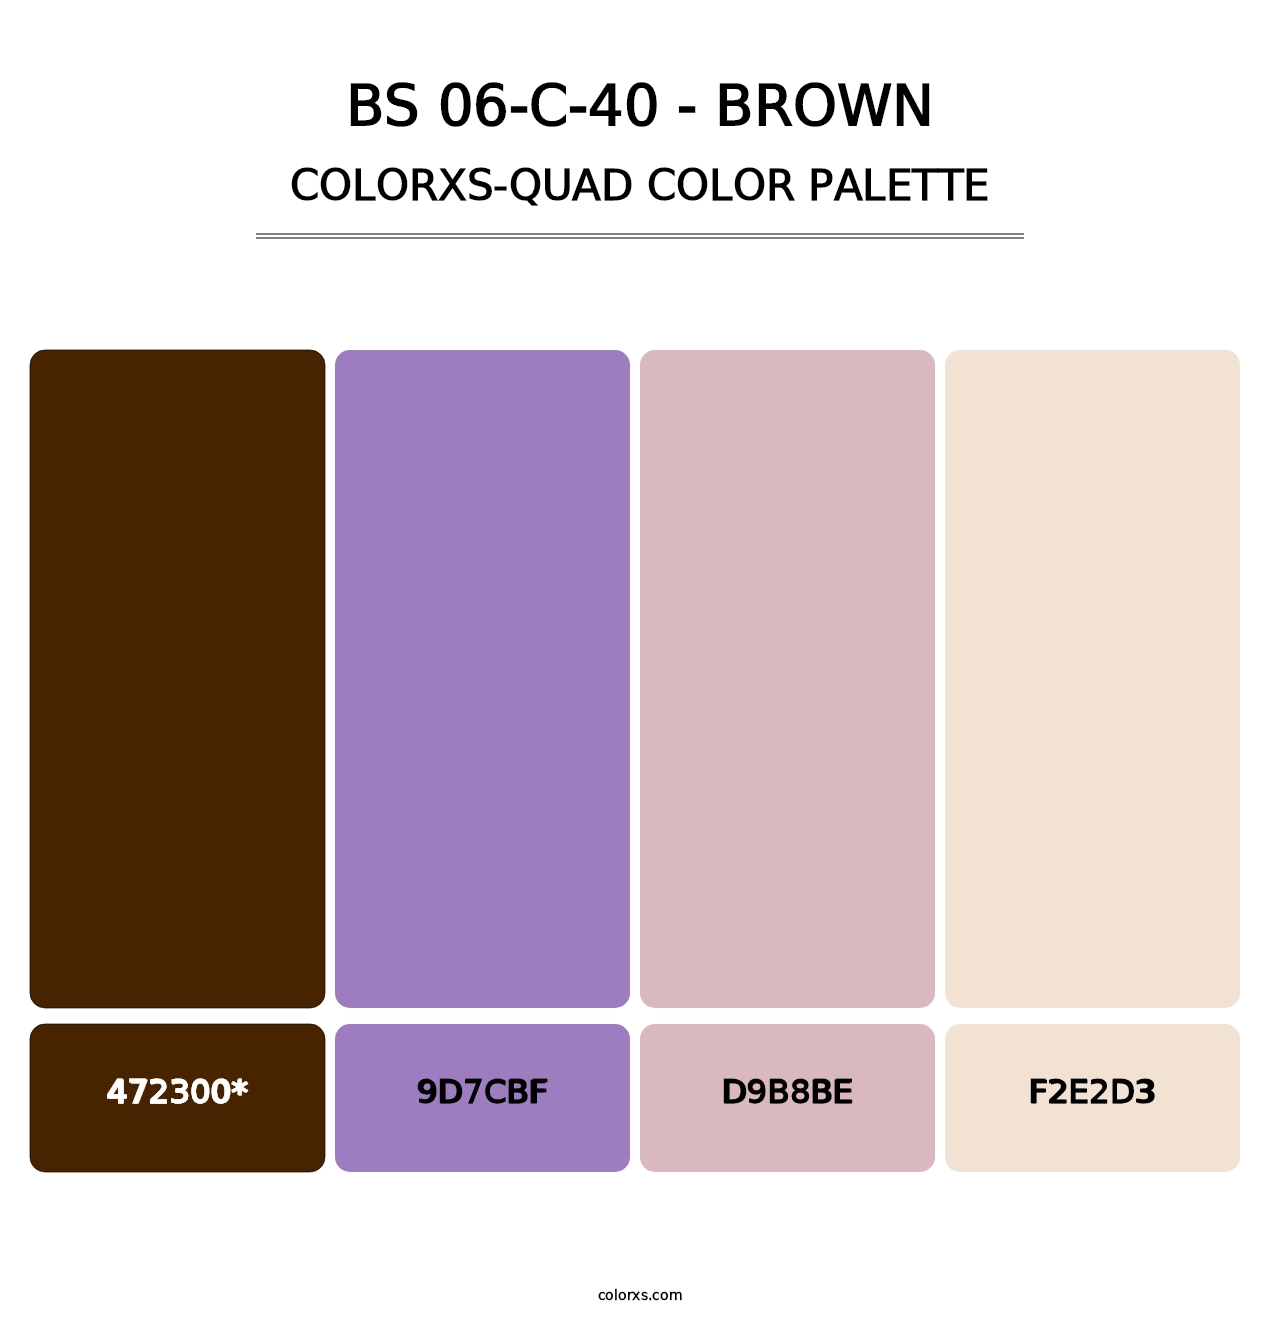 BS 06-C-40 - Brown - Colorxs Quad Palette